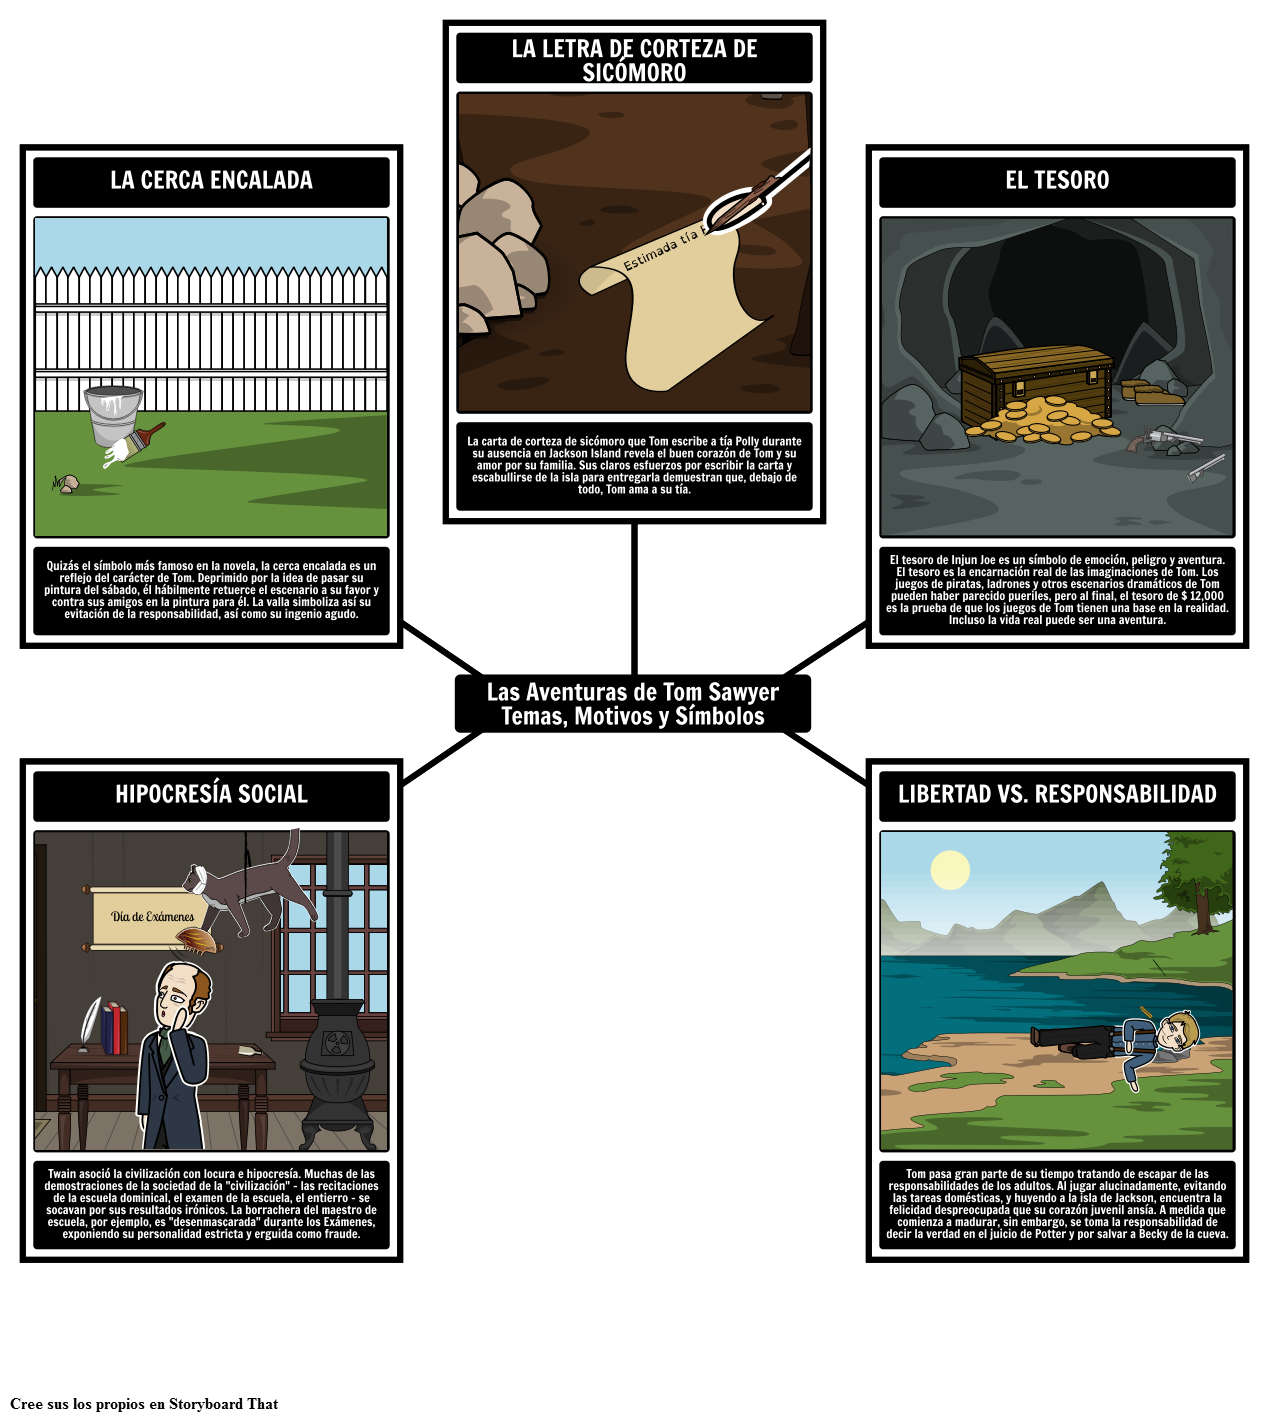 Las Aventuras de Tom Sawyer Temas, Motivos y Símbolos